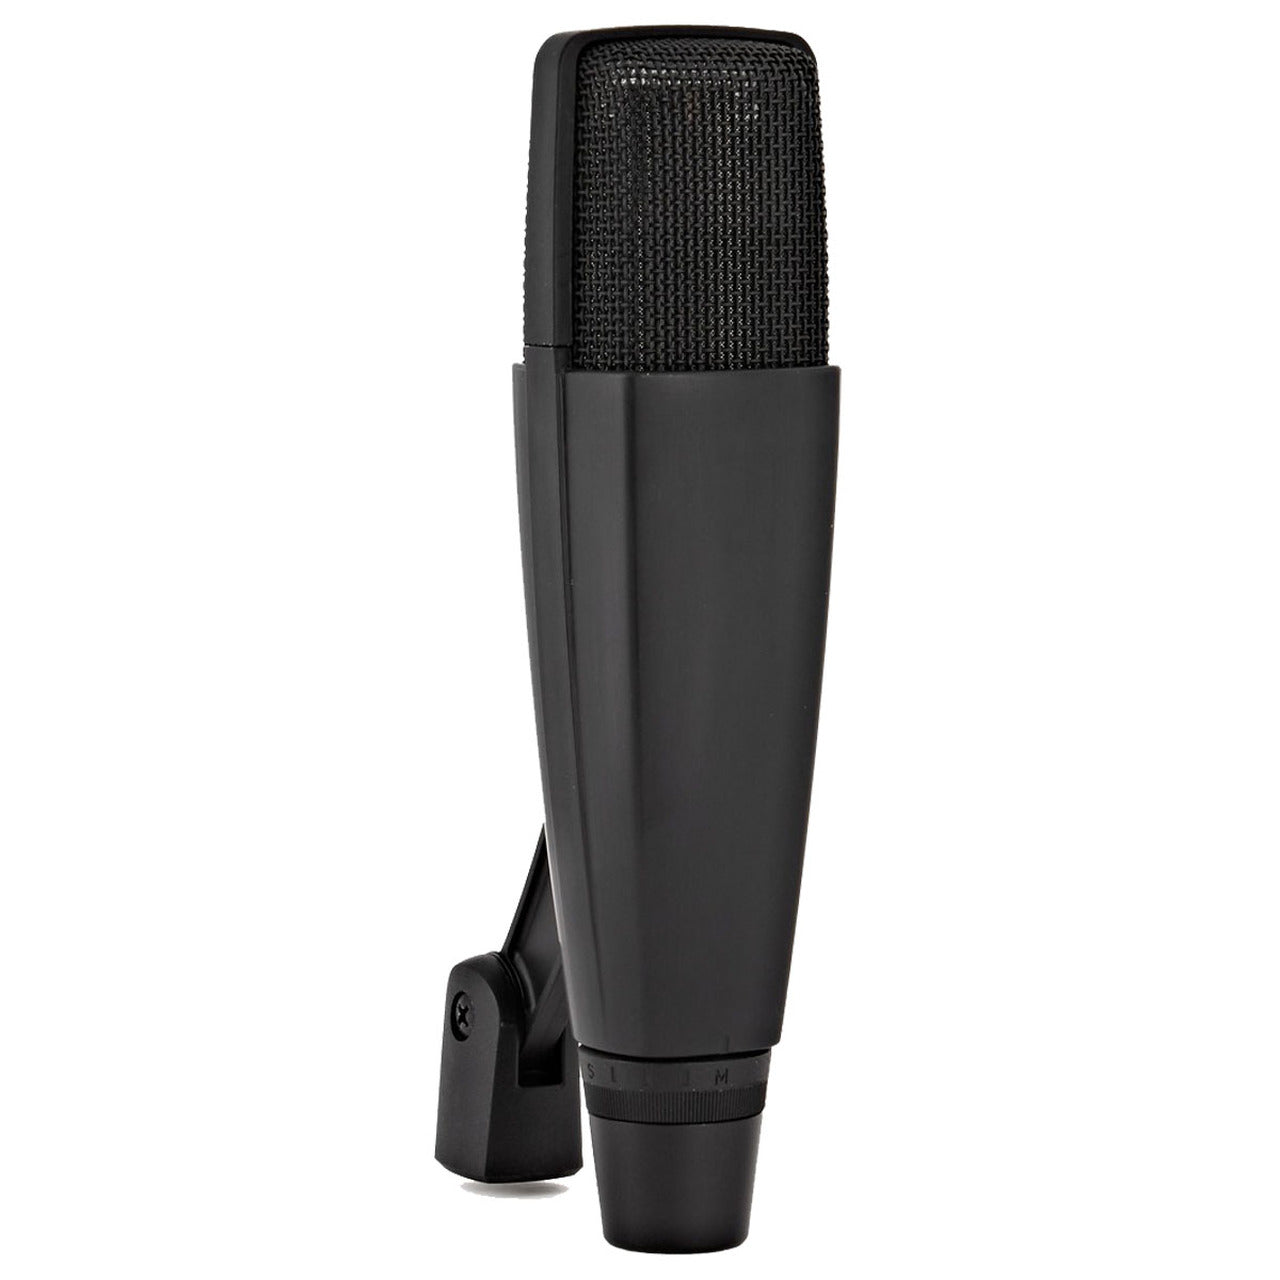 MD 421-II Dynamic Studio Microphone